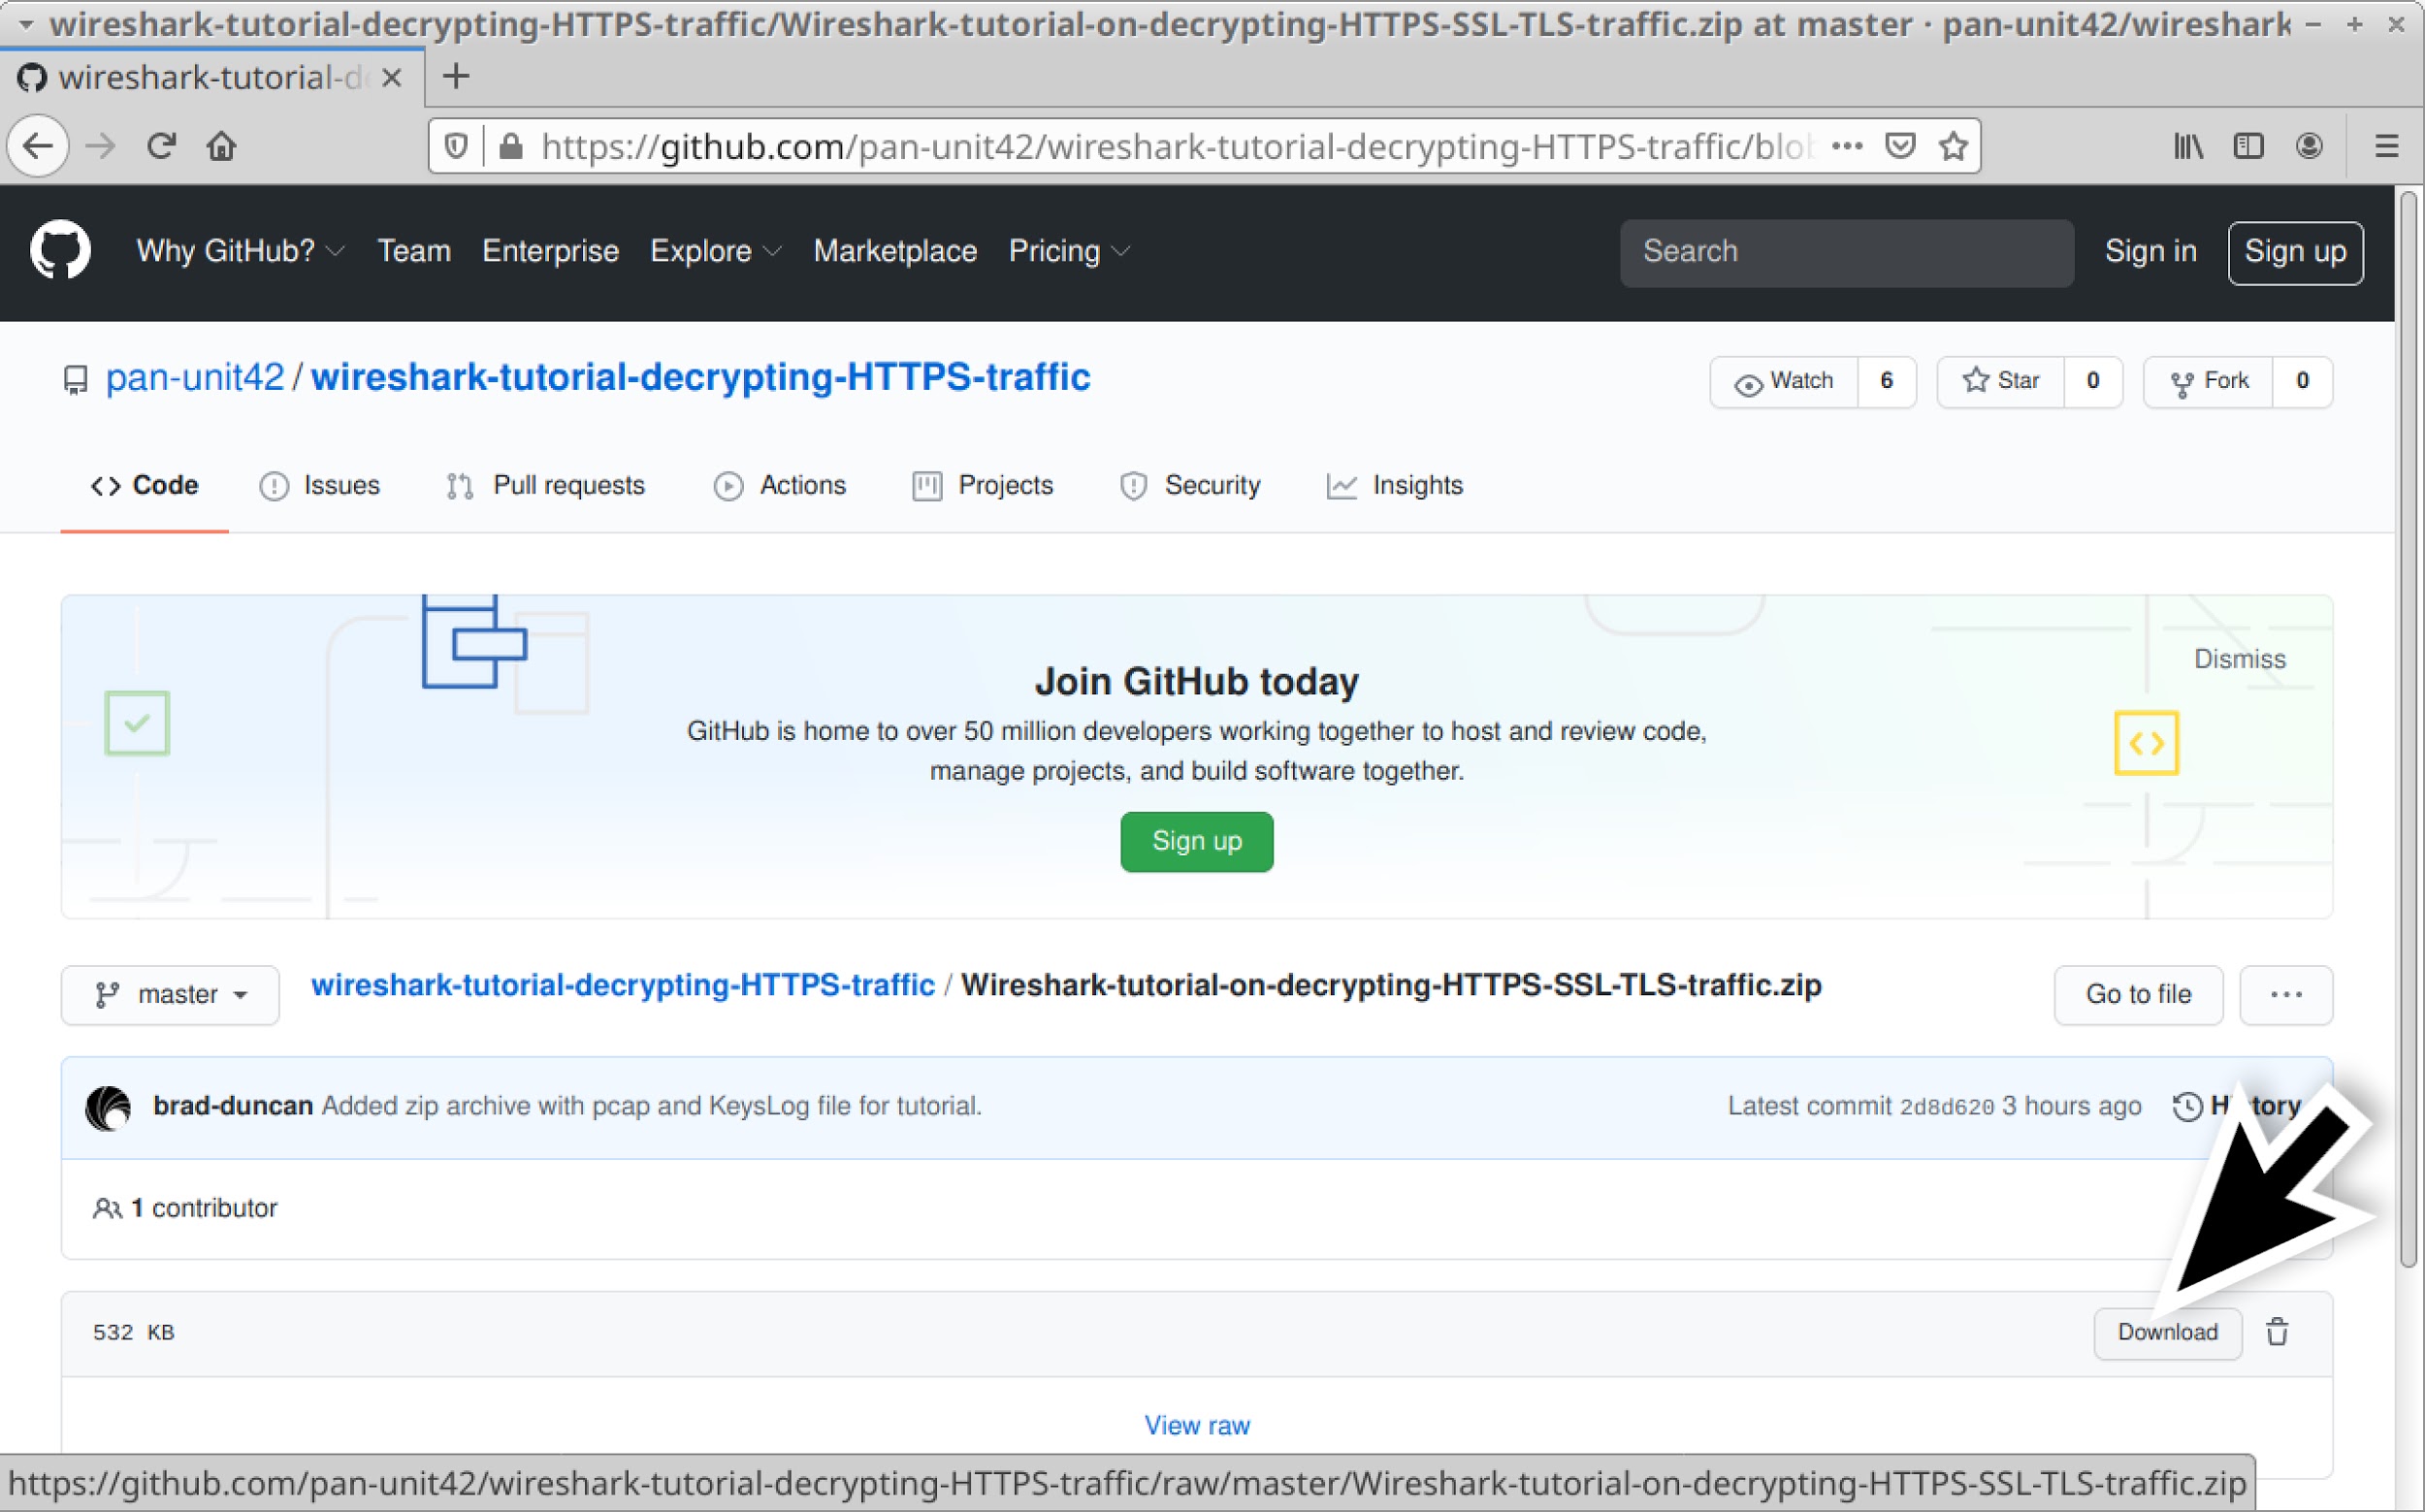 pan-unit42/wireshark-tutorial-decrypting-HTTPS-traffic のスクリーンショット。チュートリアルに使うZIPファイルをGitHubからダウンロードする手順を示している 